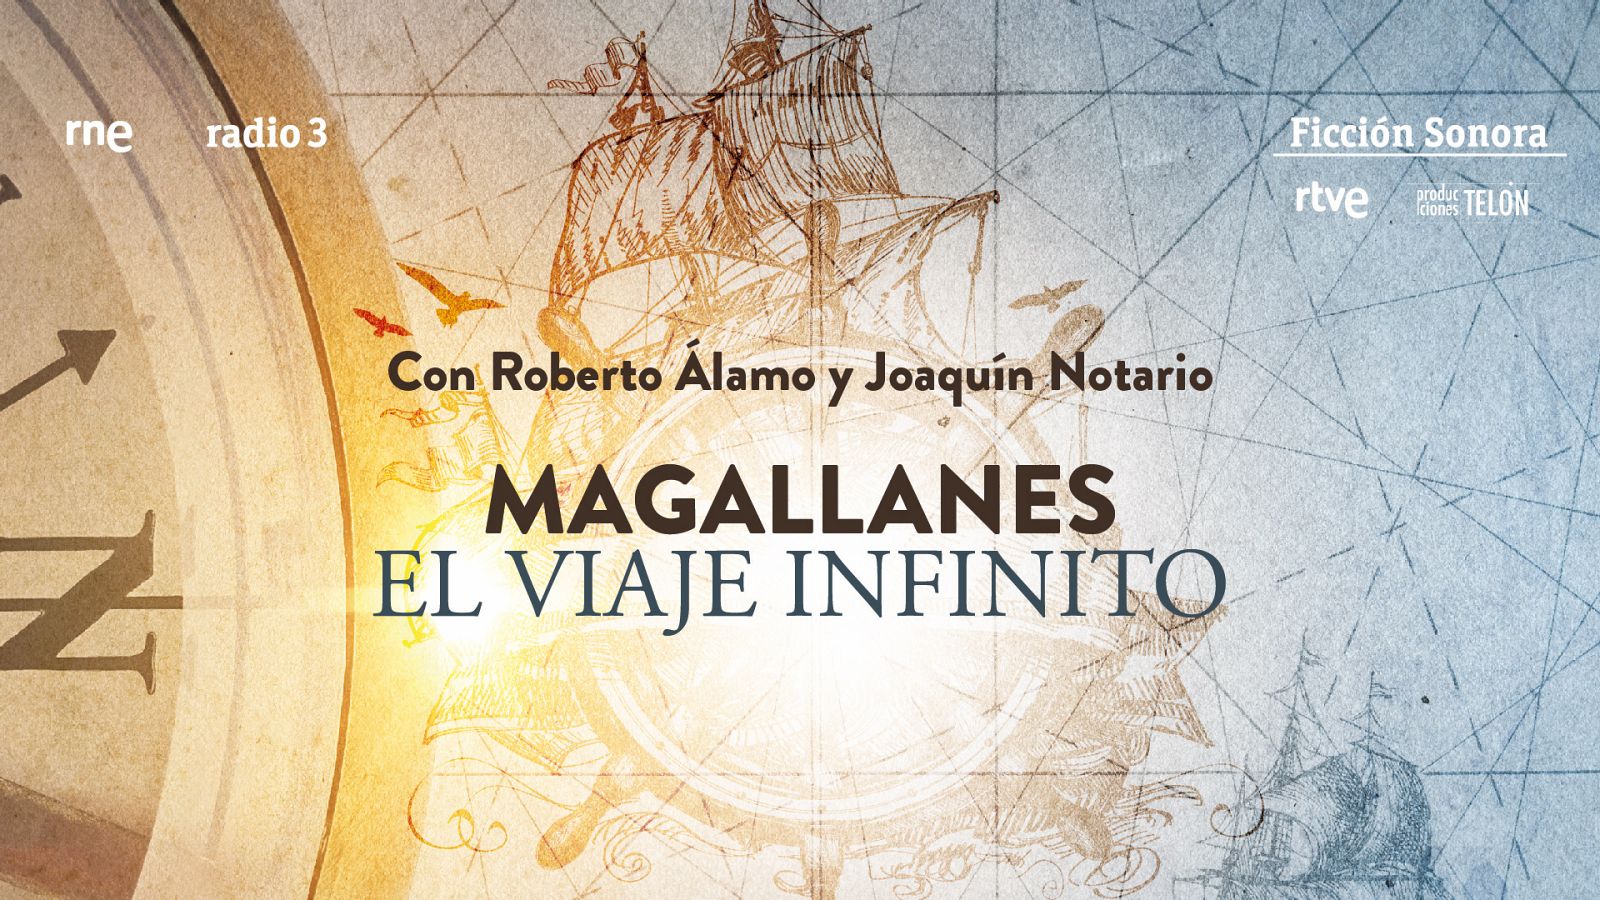 Ficción sonora - Magallanes, el viaje infinito - 15/07/20 - Ver ahora